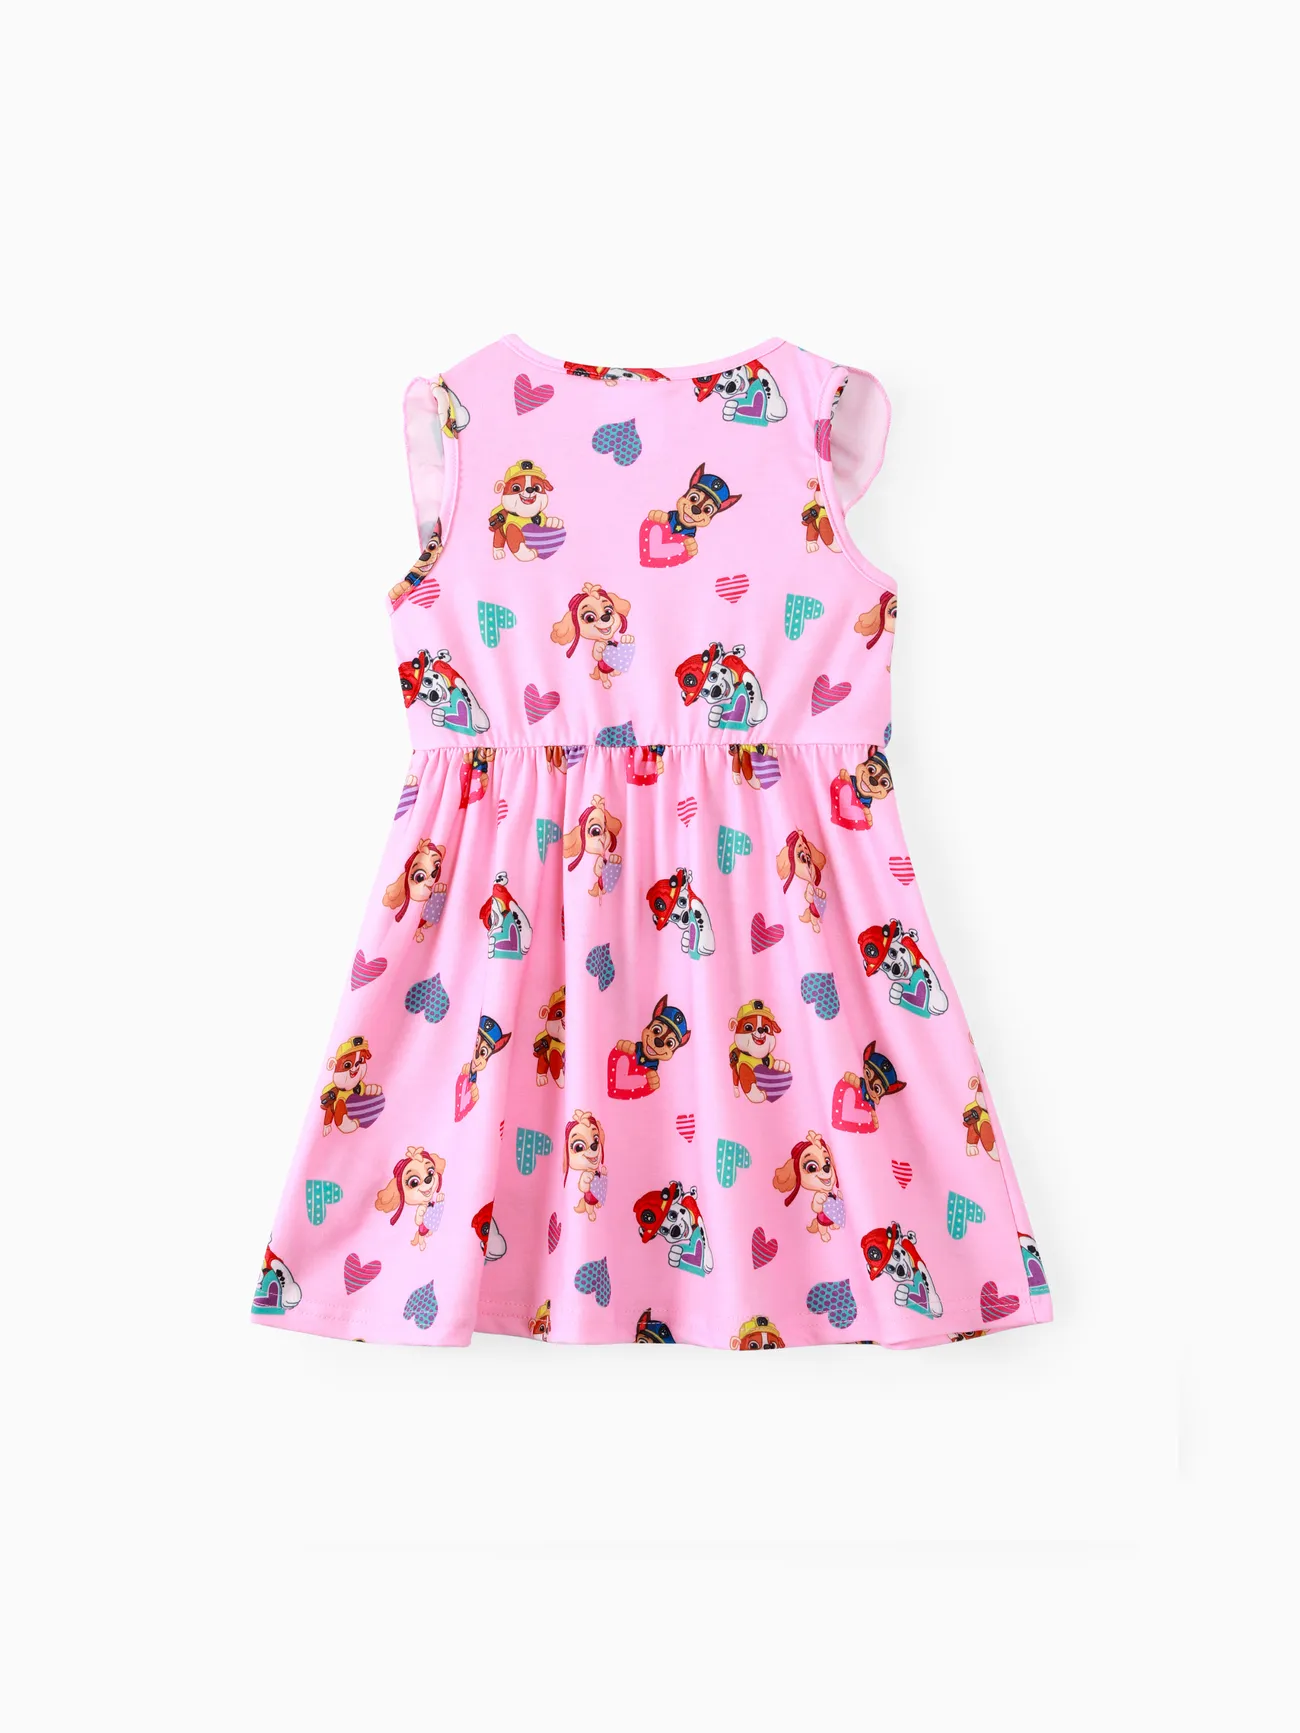 PAW Patrol Toddler Girl Naia/Cotton Sleeveless Dress Pink big image 1